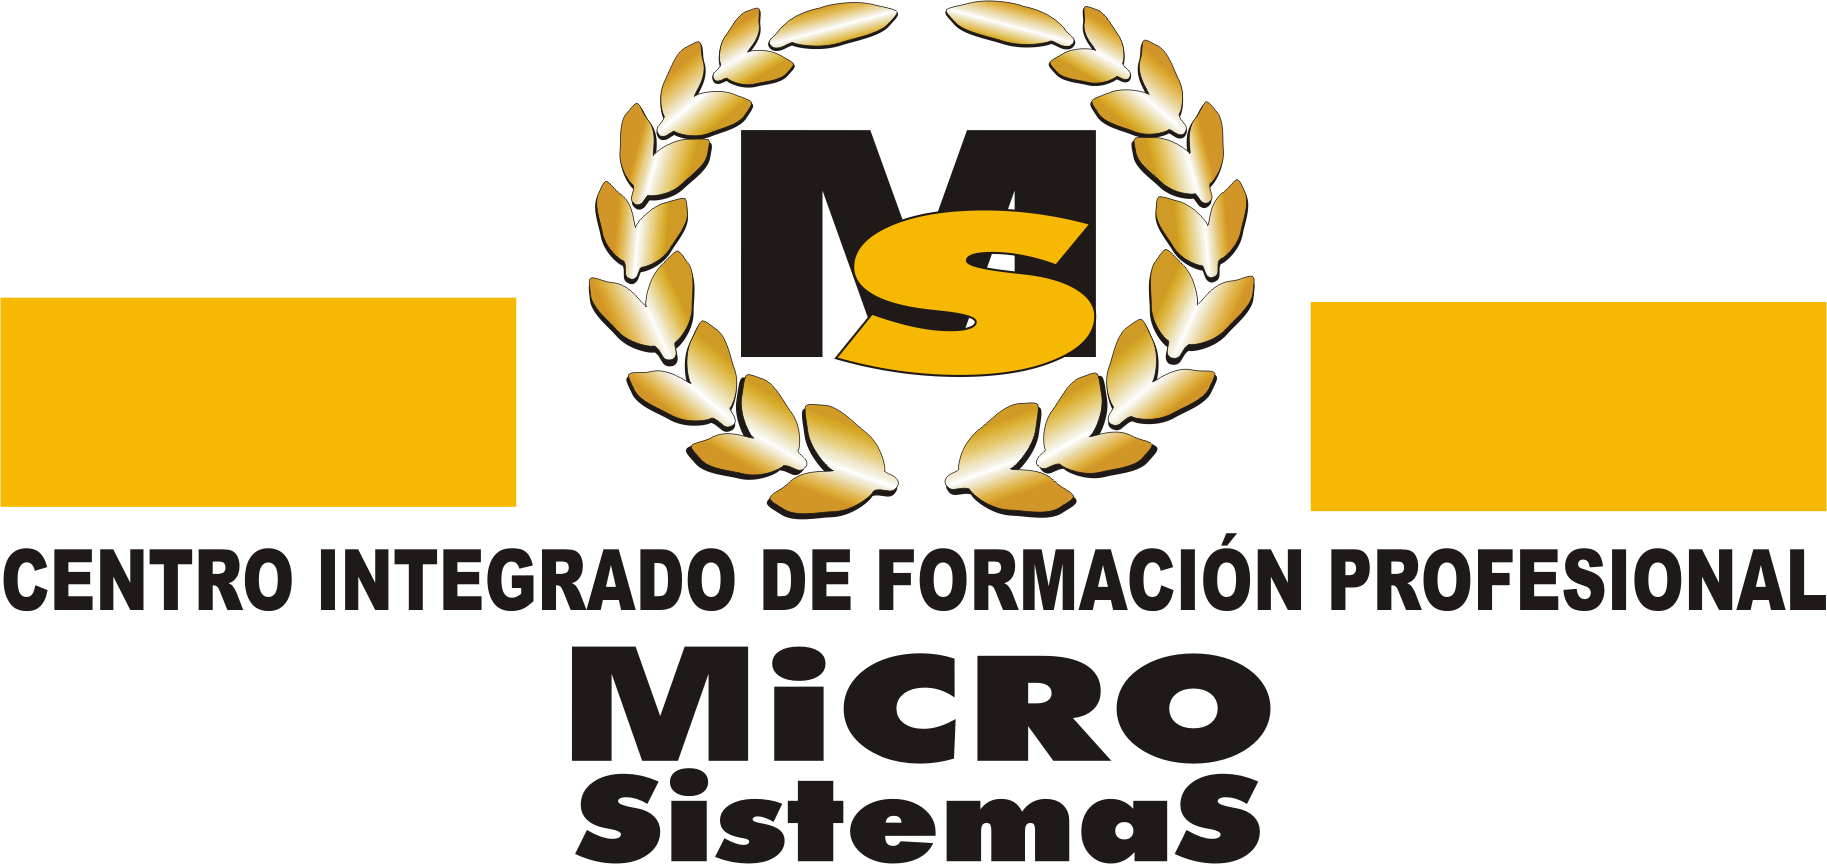 GESTIÓN DE RECURSOS HUMANOS - Microsistemas Lanzarote